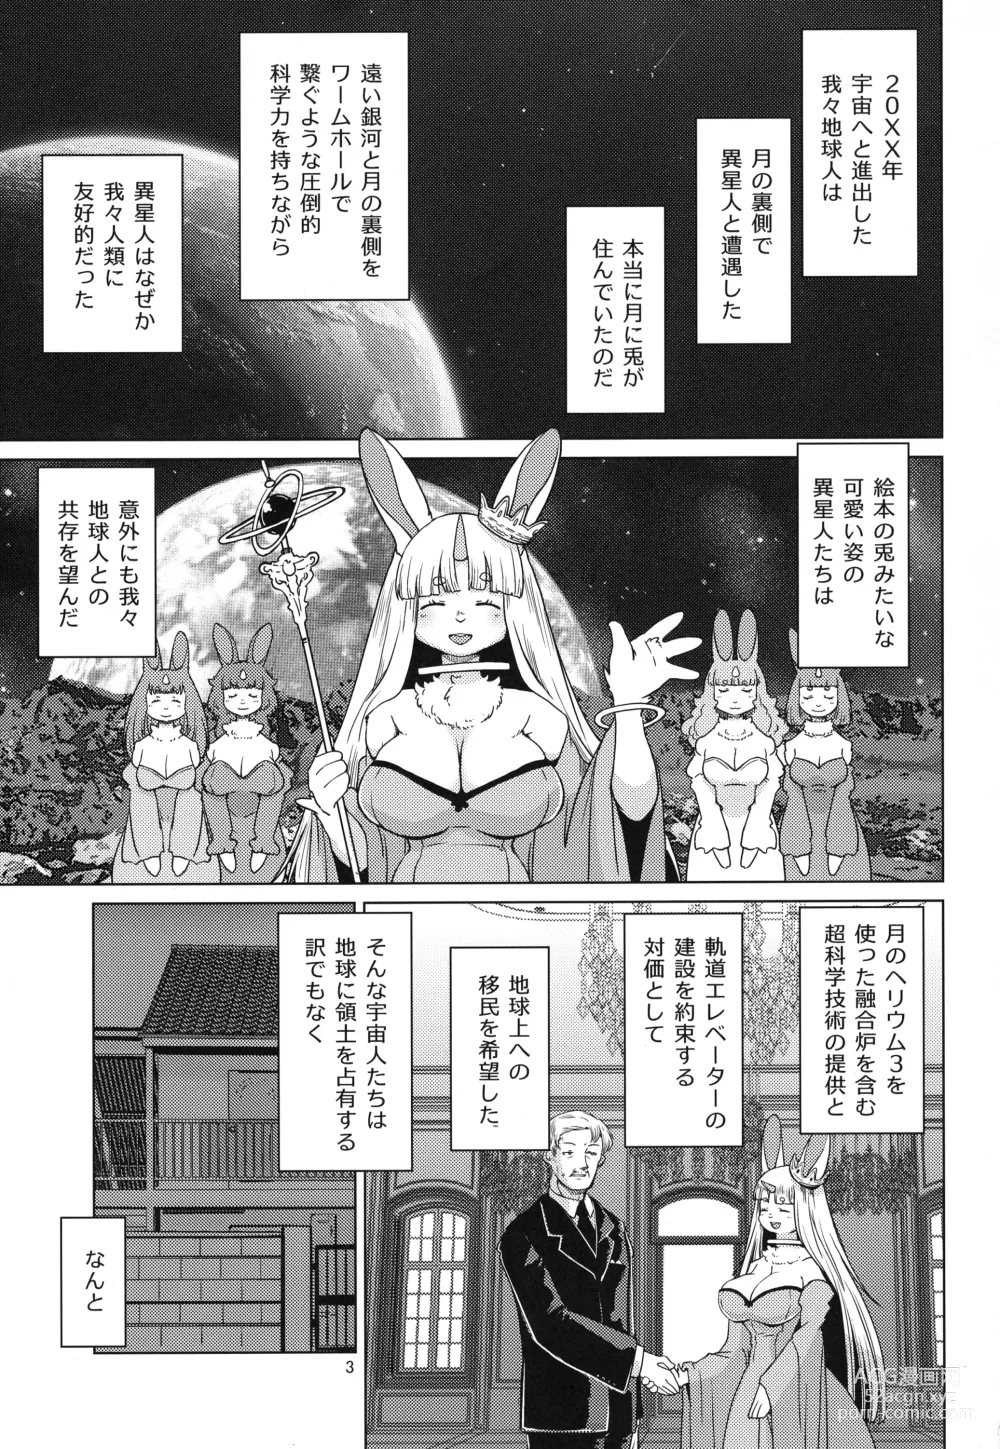 Page 3 of doujinshi Mofumofu Invasion